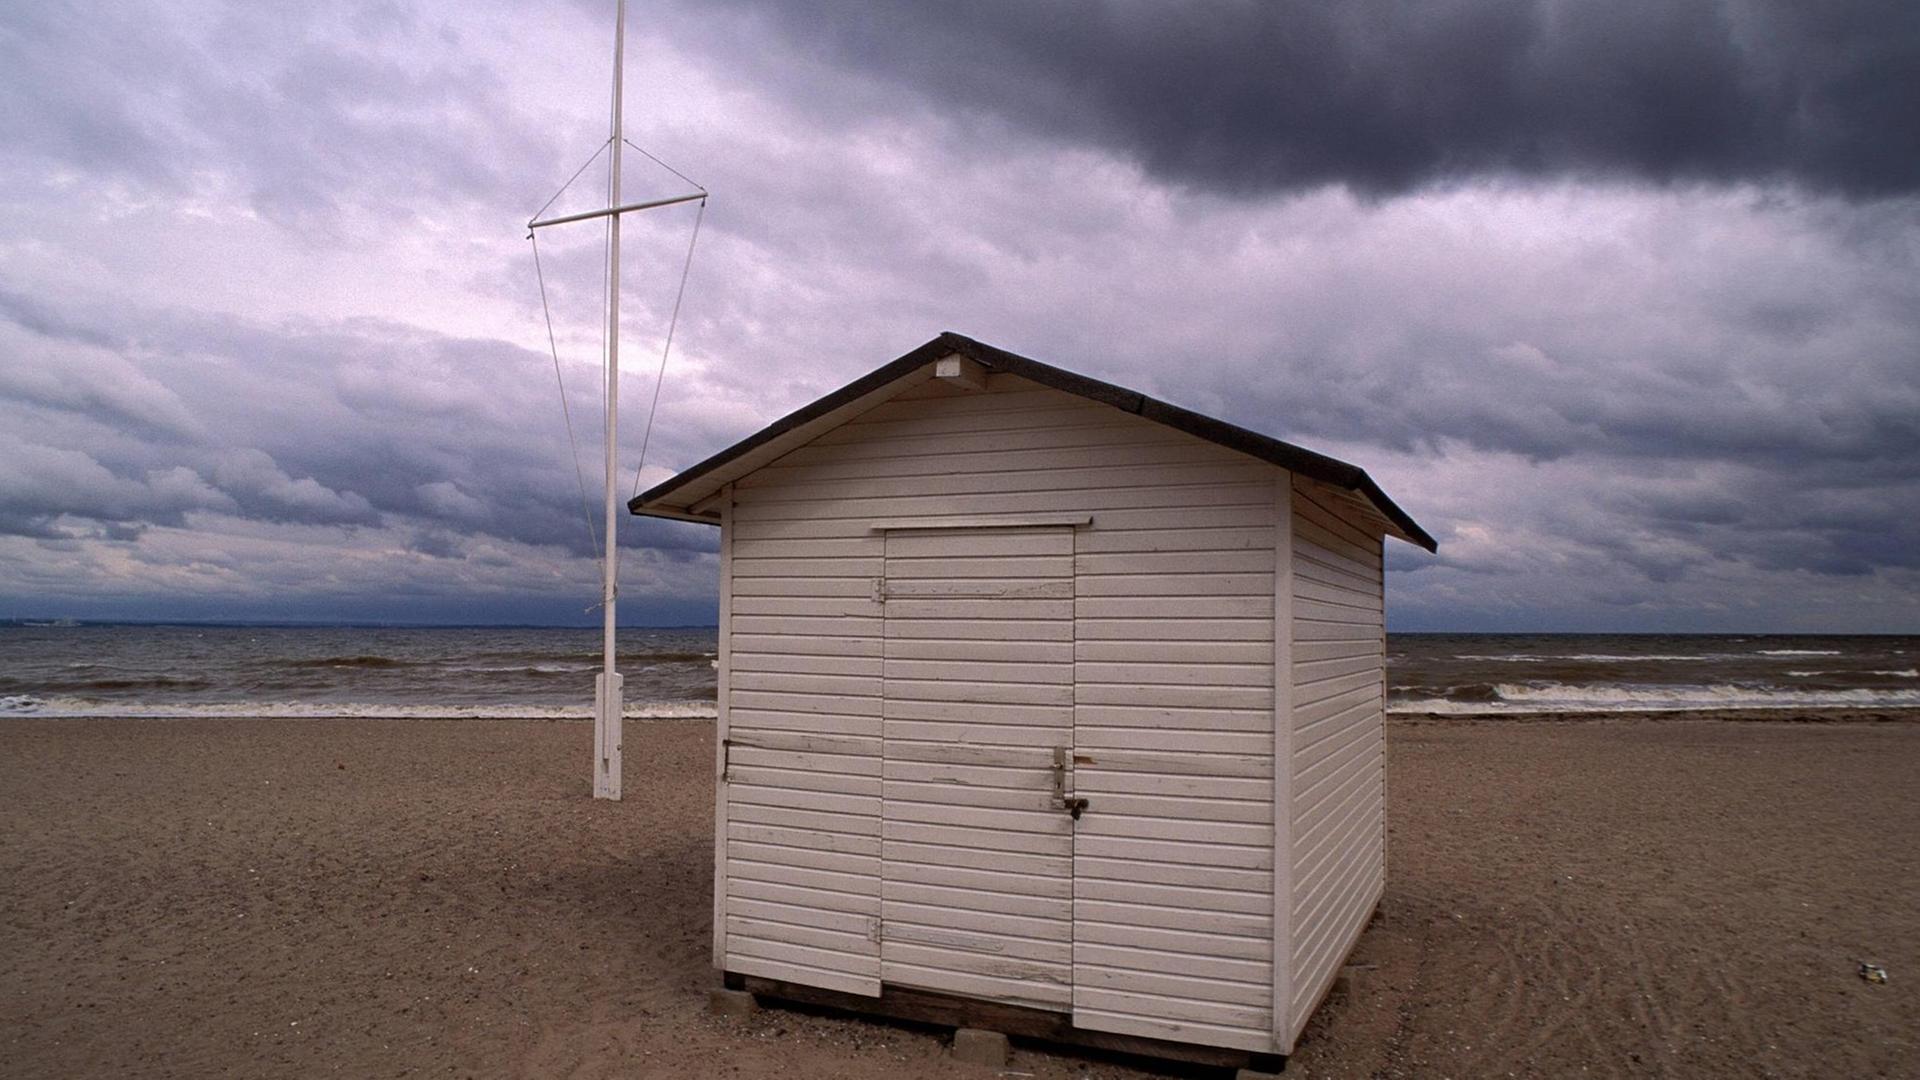 Hütte am Strand, dunkel aufziehende Wolken.